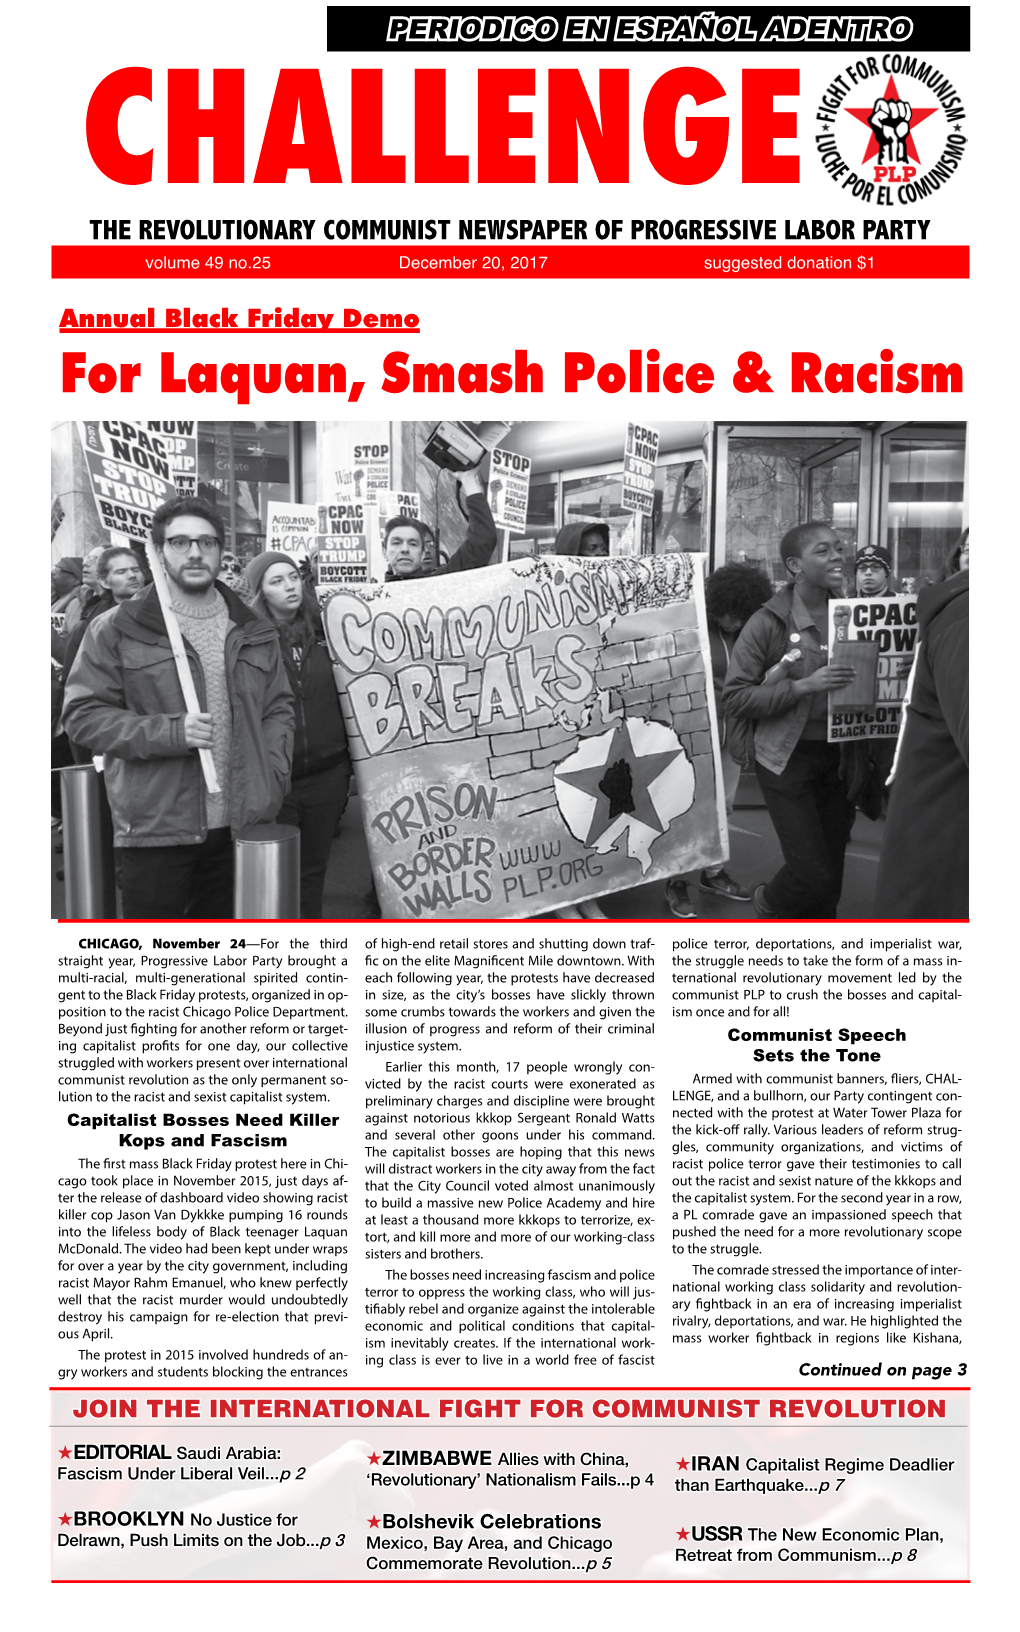 For Laquan, Smash Police & Racism